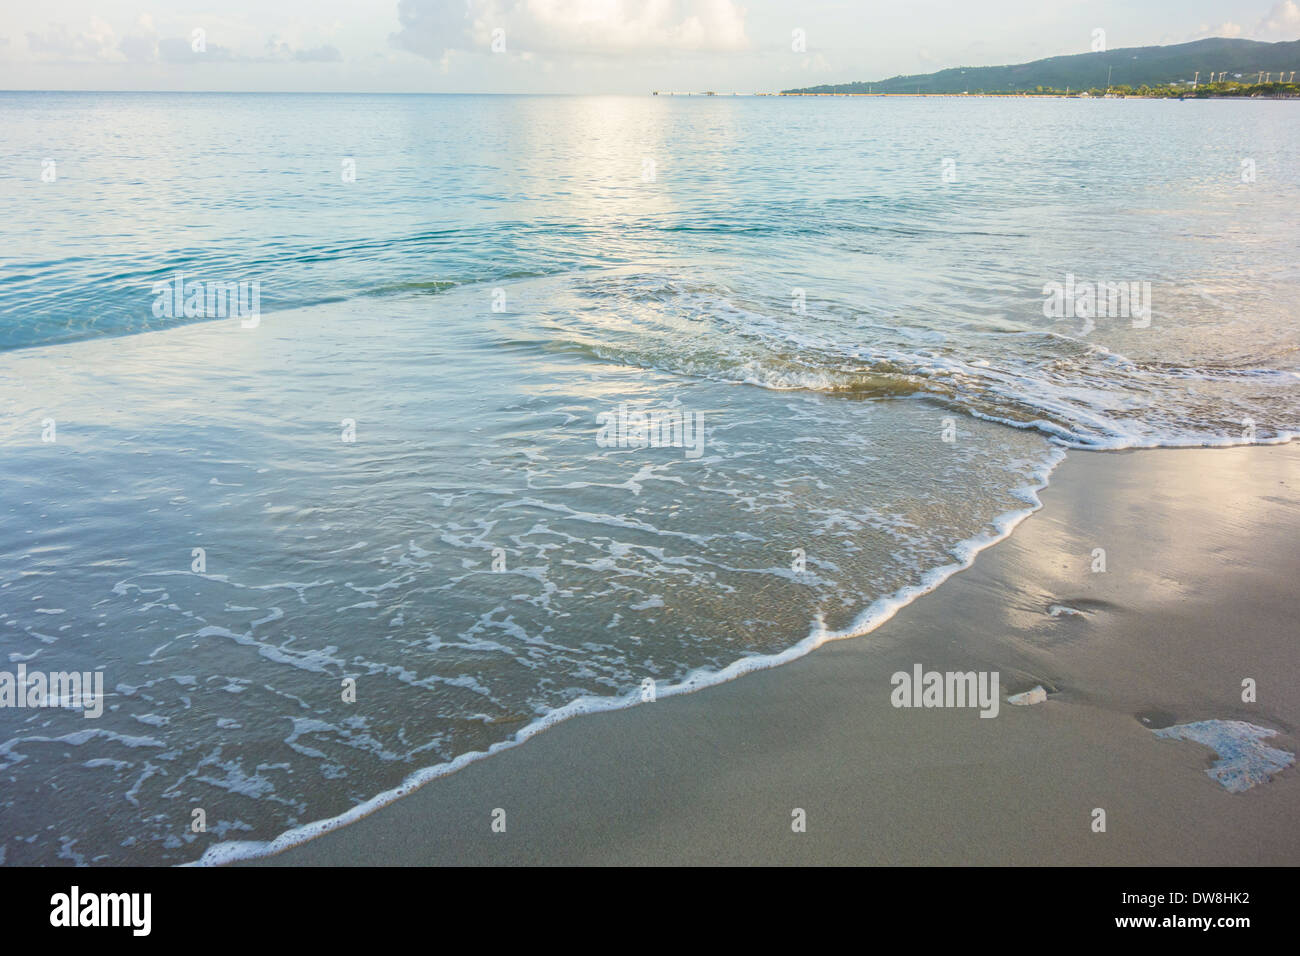 Castello di sabbia spiaggia che mostra il Mar dei Caraibi si trova sulla bellissima isola di St. Croix, U. S. Isole Vergini. Foto Stock